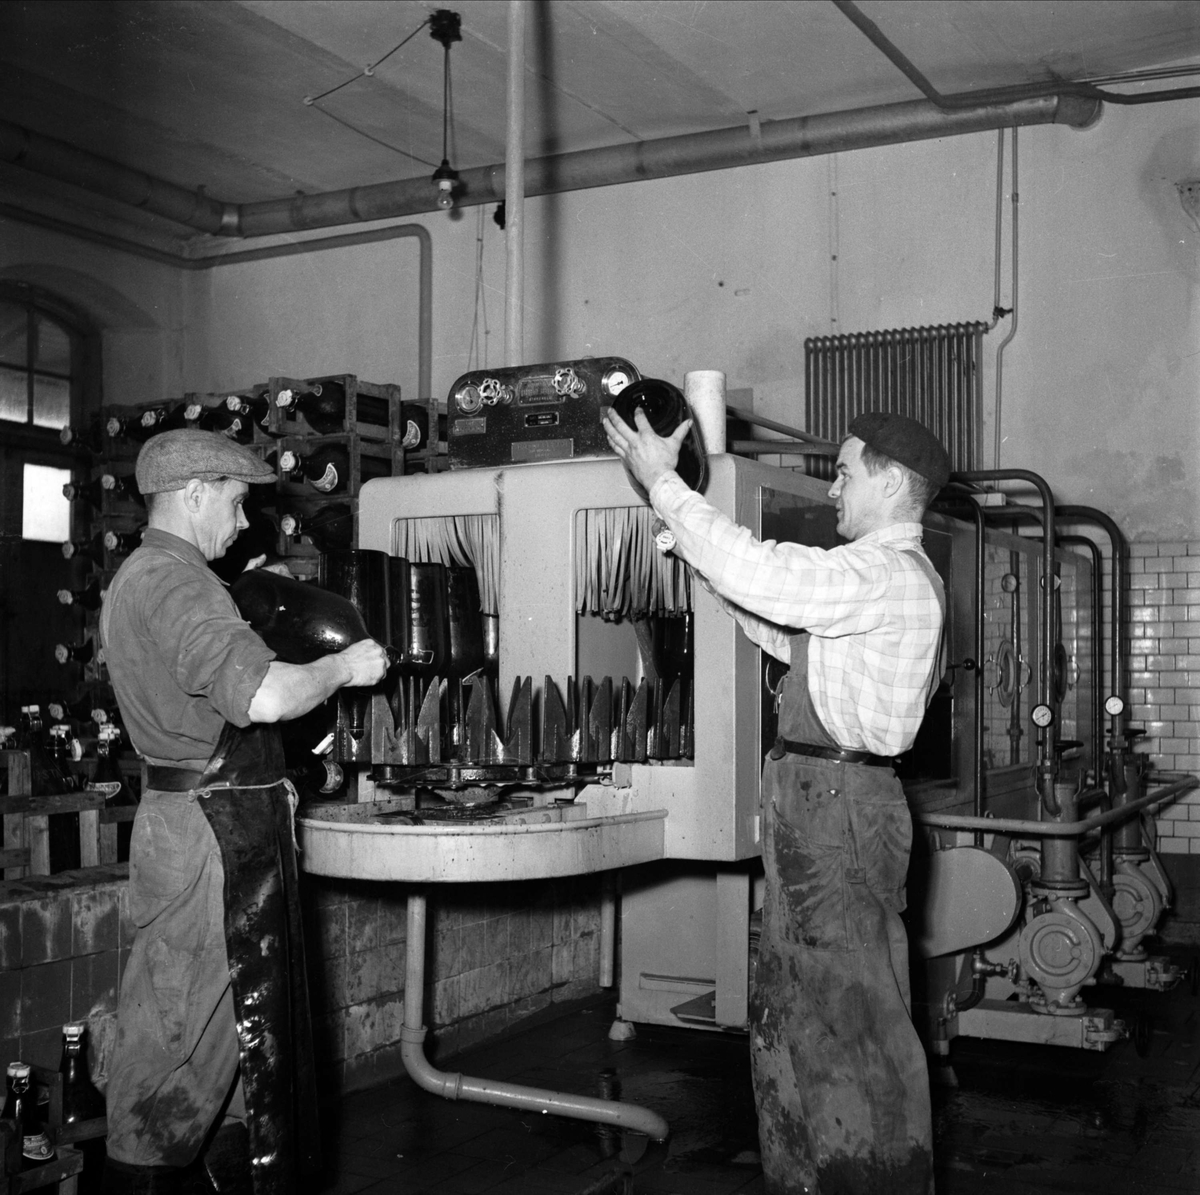 "Mejeri blev bryggeri", Storvreta Bryggeri, Rasbo, Uppland 1951. Ingvar Eriksson och verkmästare Edvin Larsson vid den stora diskmaskinen